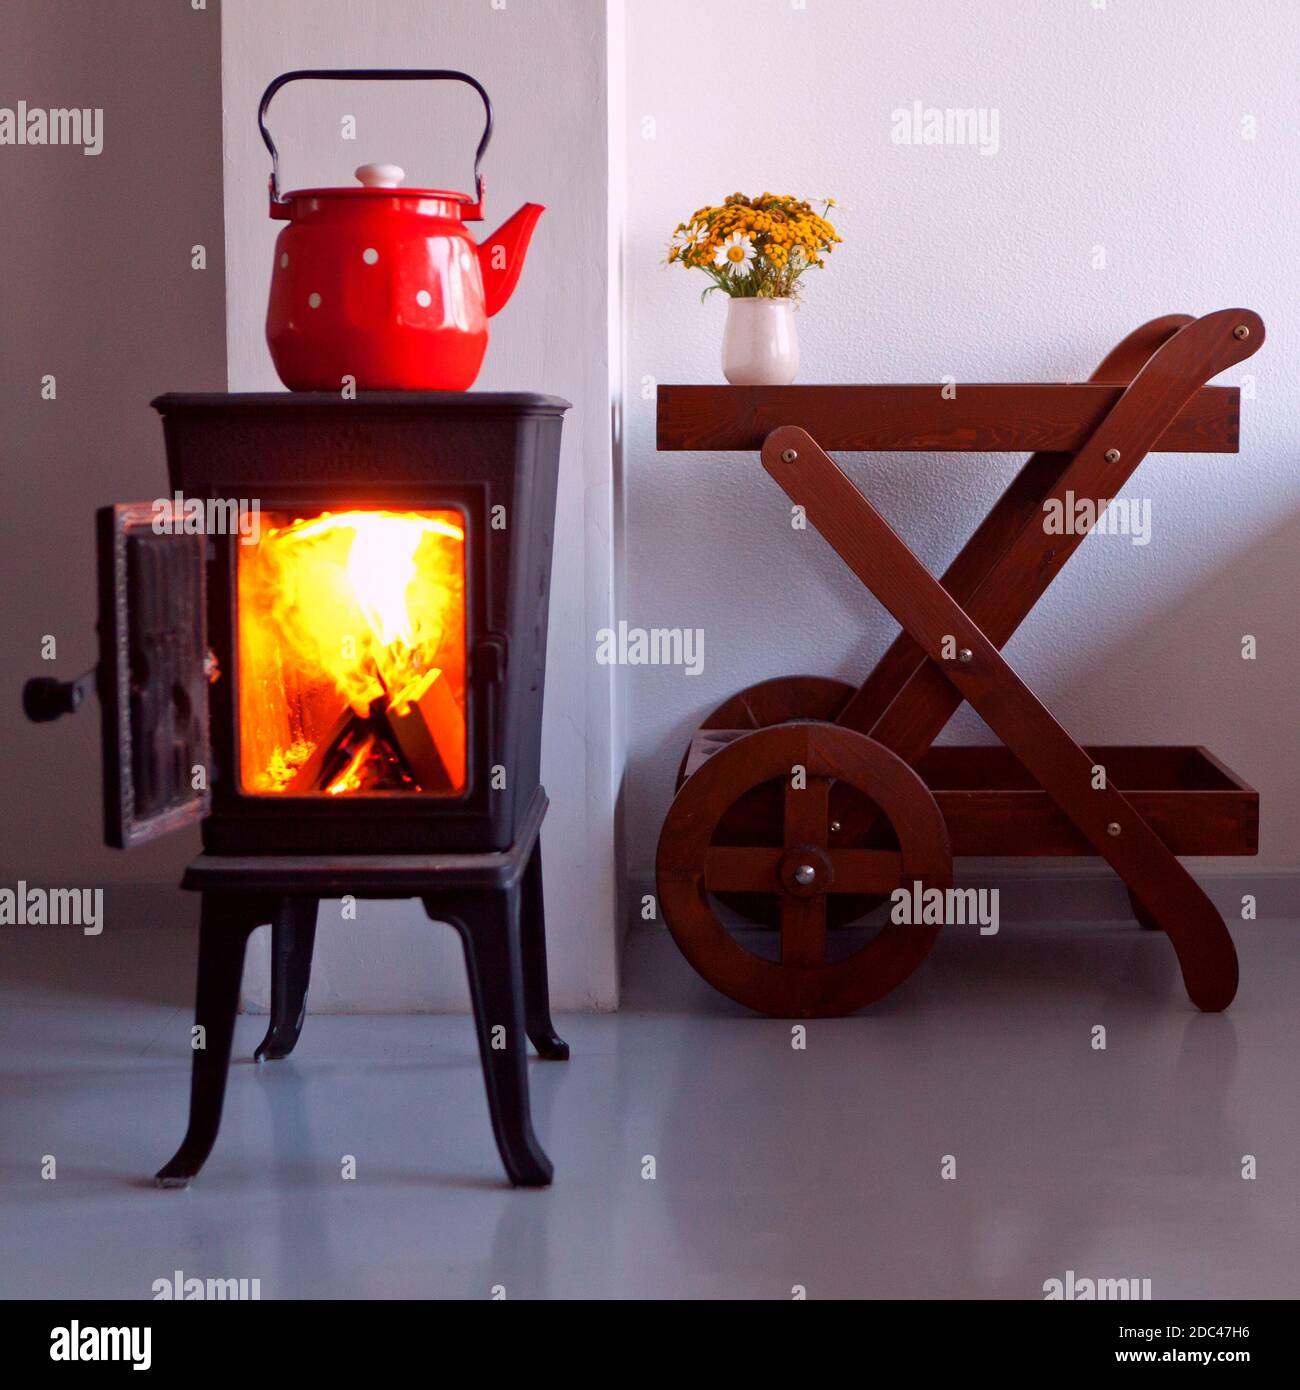 maison de campagne et intérieur avec four. bouilloire rouge bouillant sur un poêle rétro dans la cuisine. cheminée. Mise au point sur un bec Banque D'Images